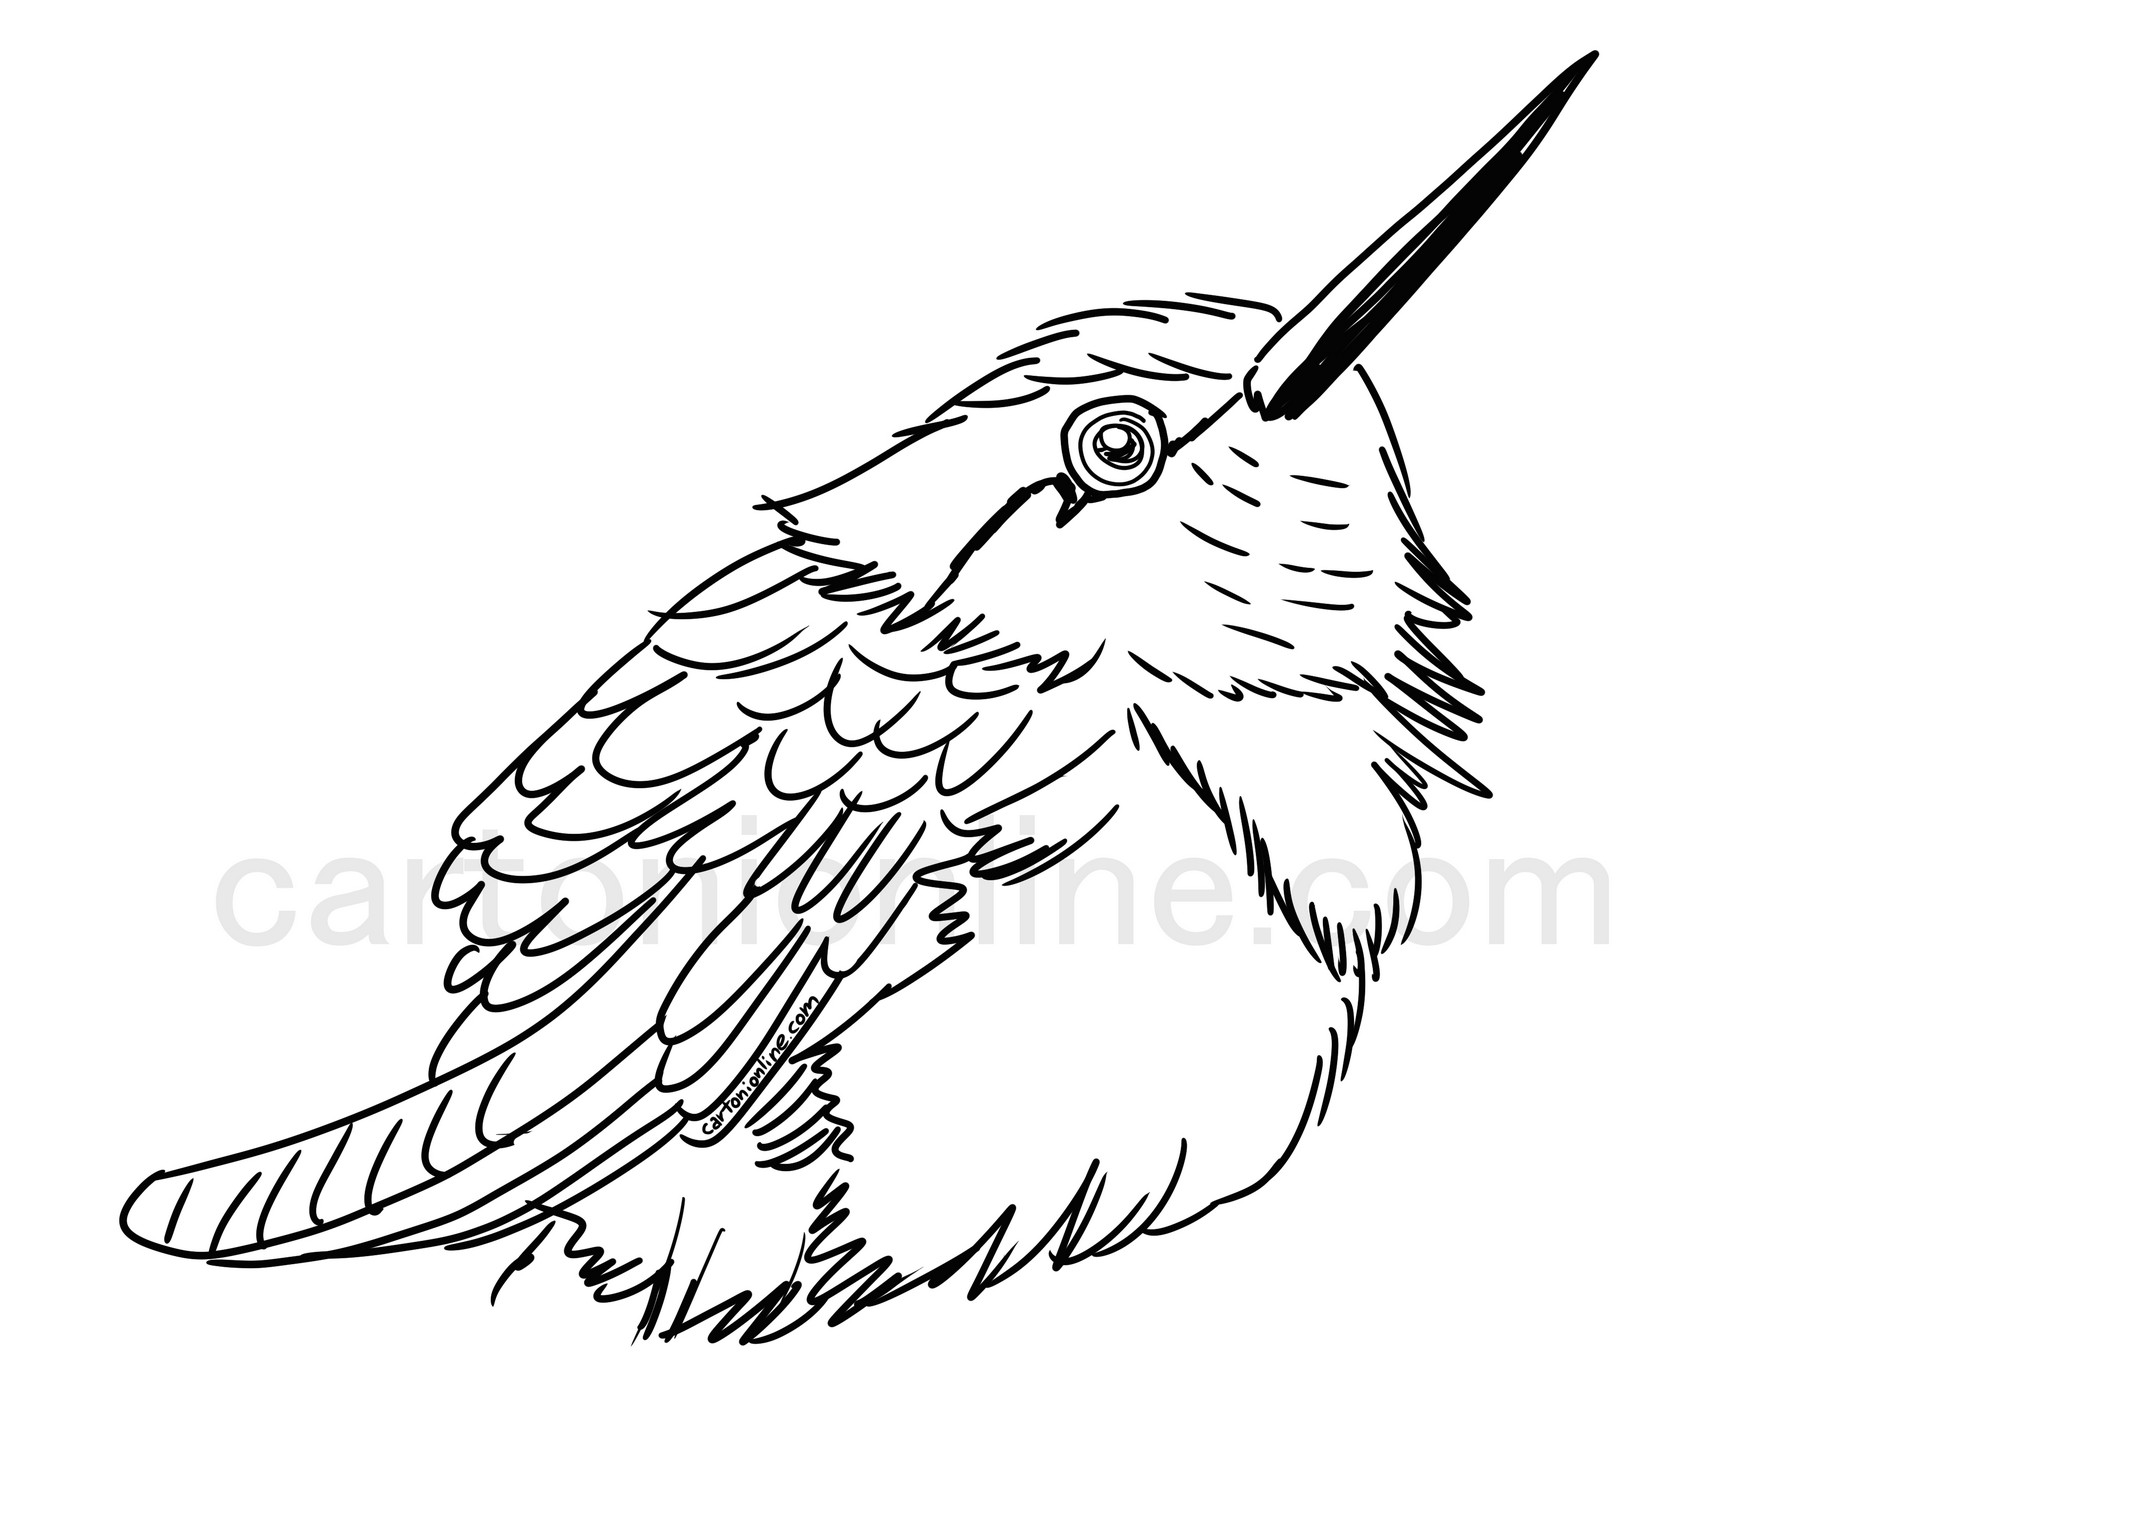 Disegno di colibr realistico da colorare